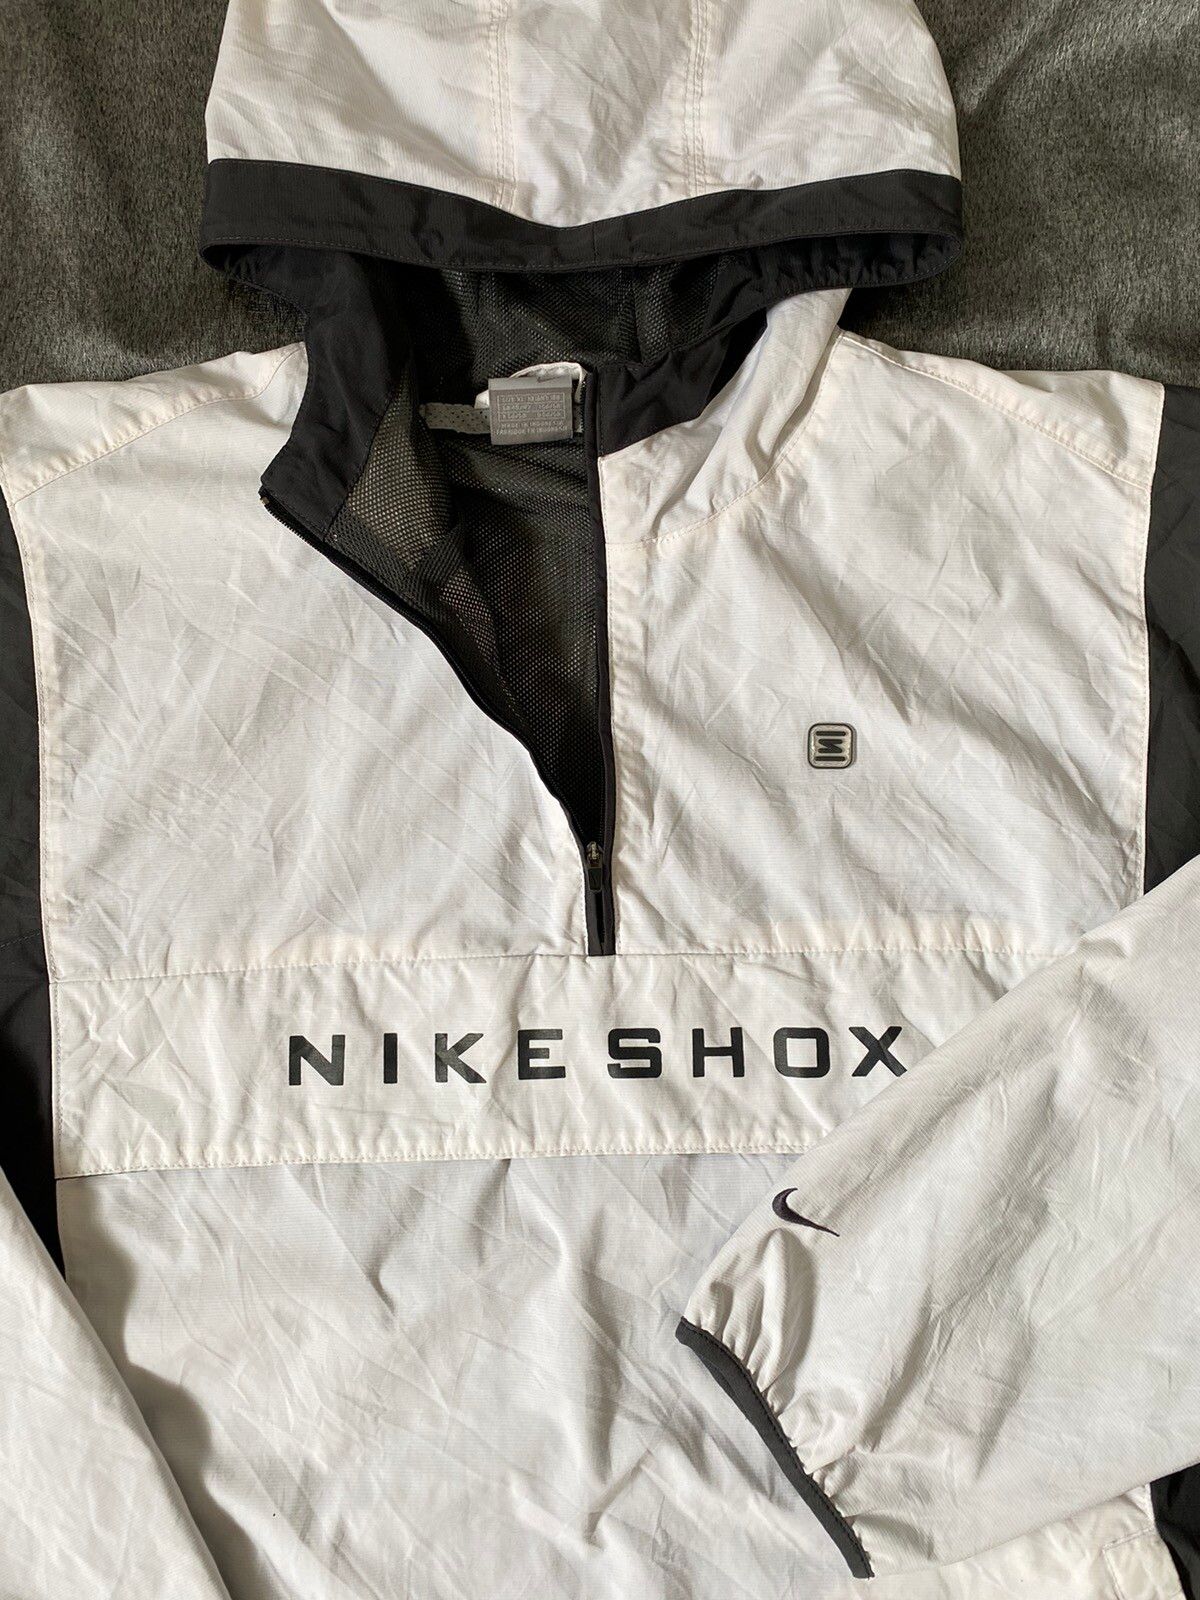 Nike Vintage Nike Shox Anorak Jacket Size US XL / EU 56 / 4 - 2 Preview